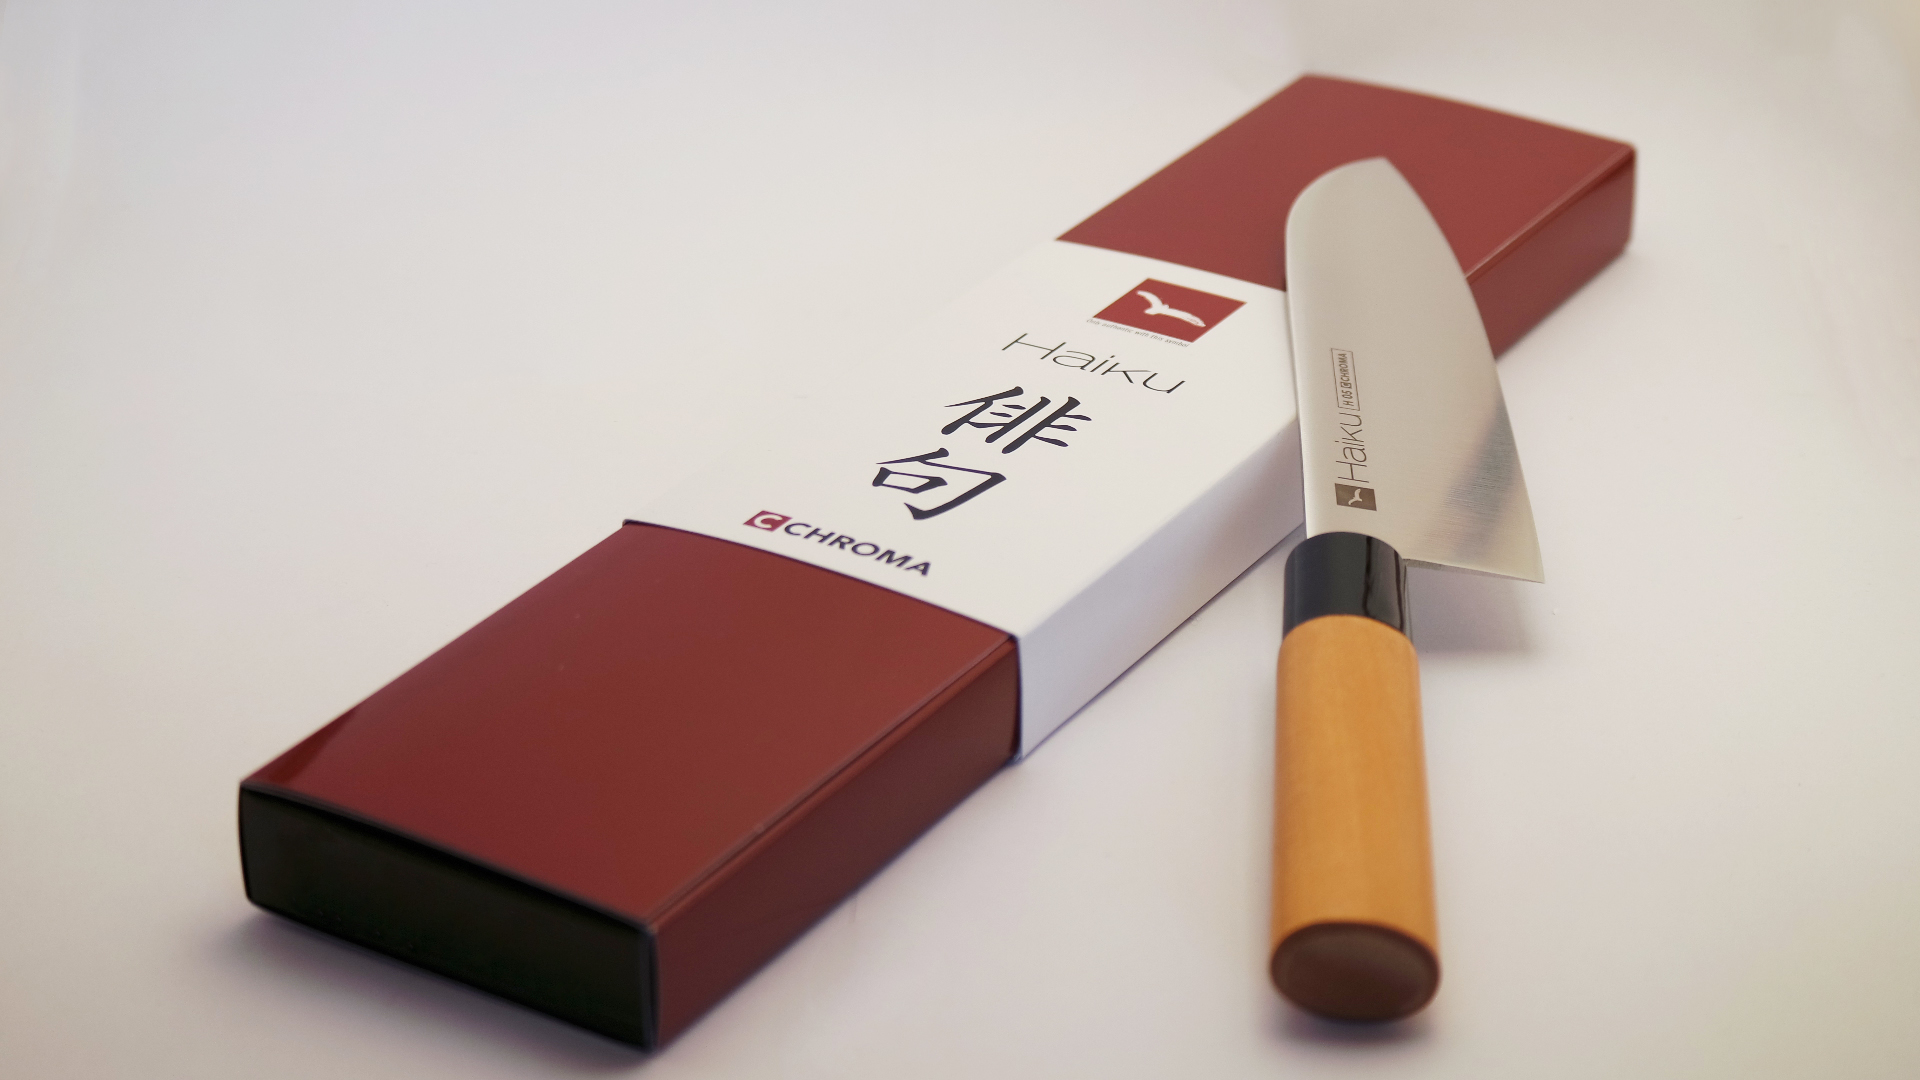 Visuel de Haiku - Haiku Gamme de couteaux de cuisine japonais Haiku